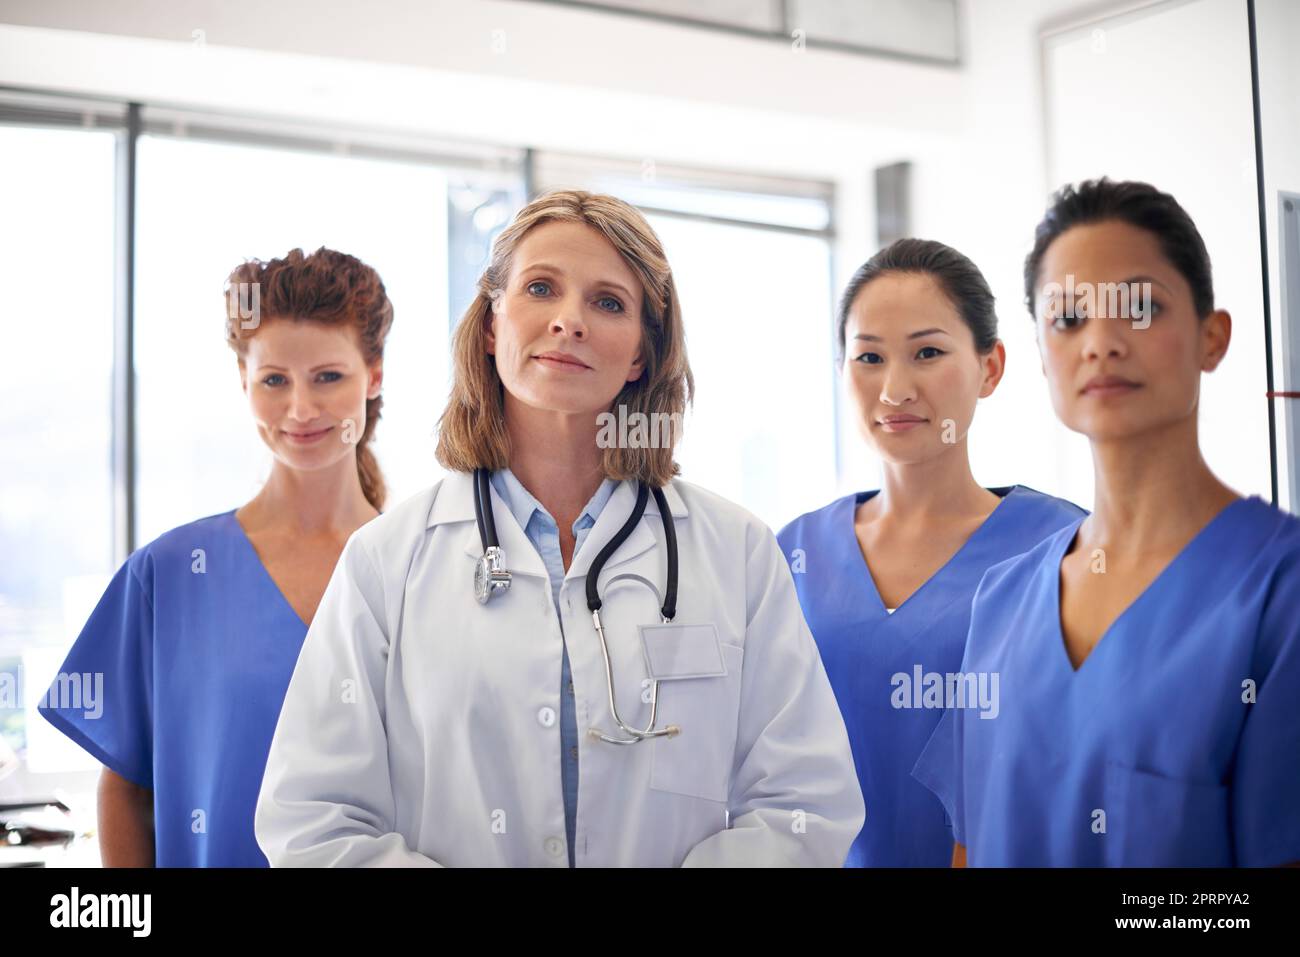 Vous pouvez en dépendre. Portrait d'un groupe d'infirmières debout à côté d'une femme médecin dans un hôpital. Banque D'Images